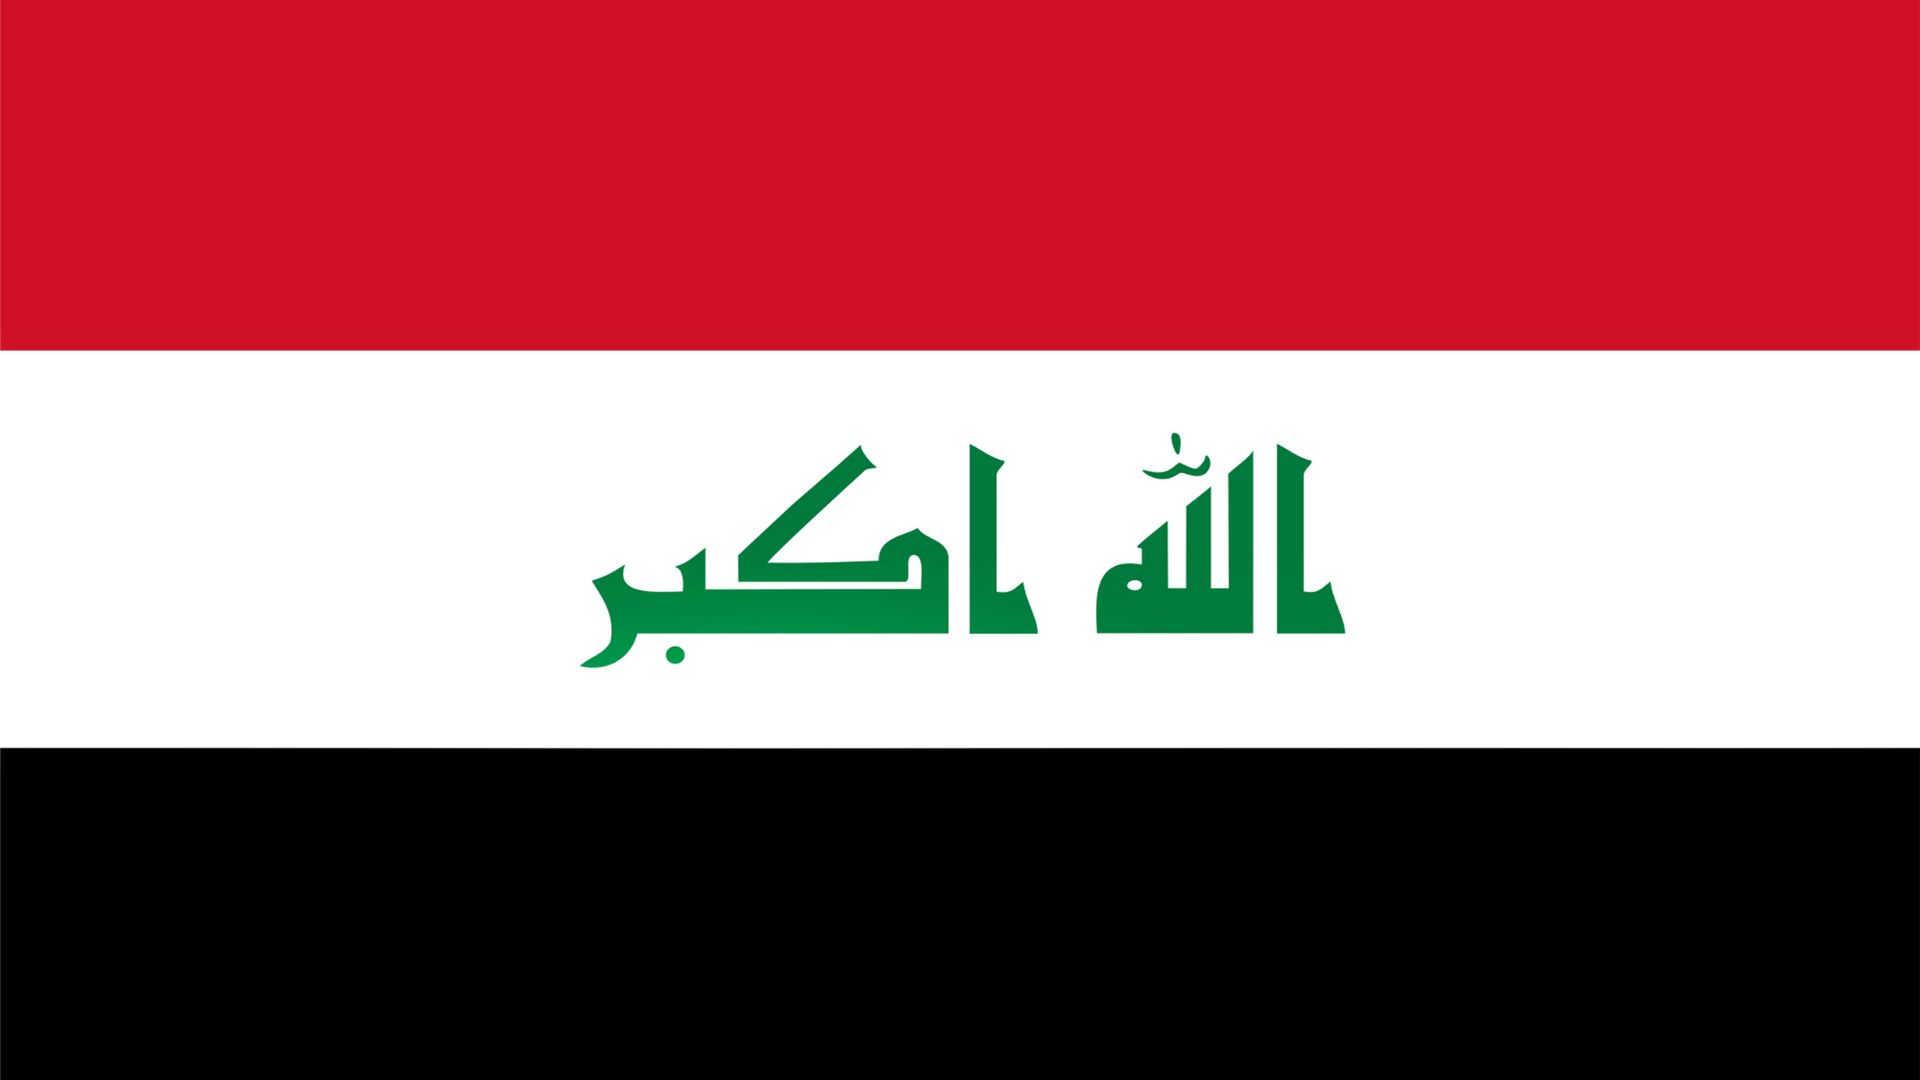 A bandeira do Iraque consiste em um retângulo dividido horizontalmente em três faixas de mesma largura, sendo a superior vermelha, a intermediária branca e a inferior preta.